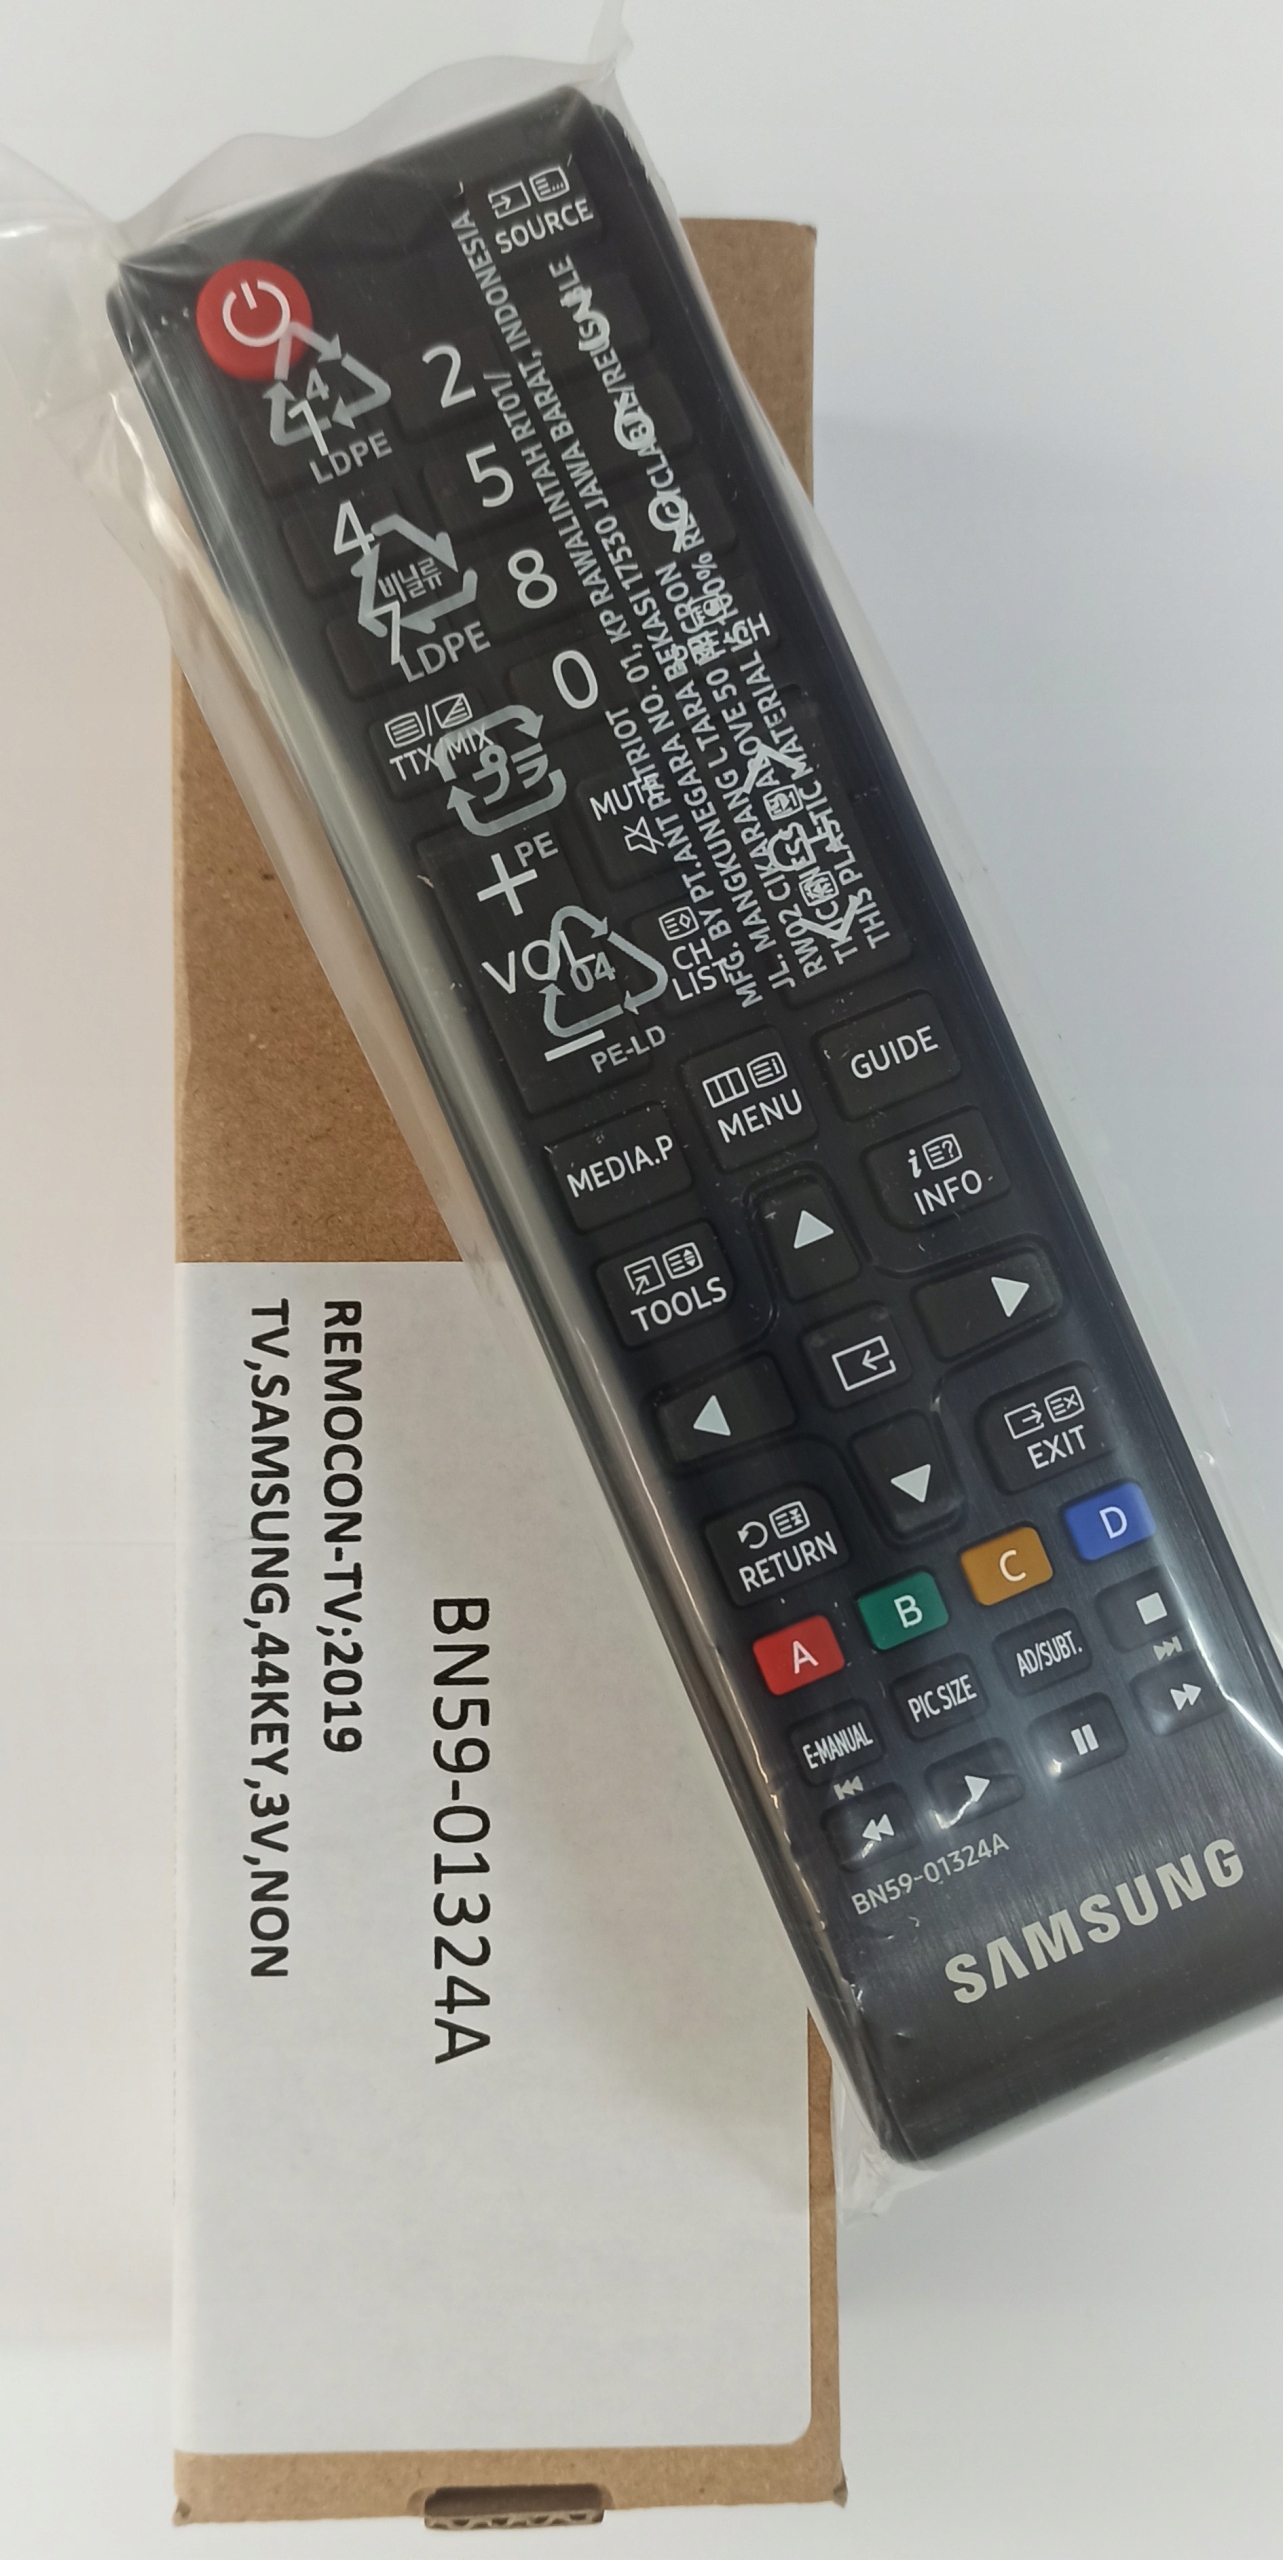 Оригинальный пульт дистанционного управления для Samsung TV все модели. Бренд Samsung